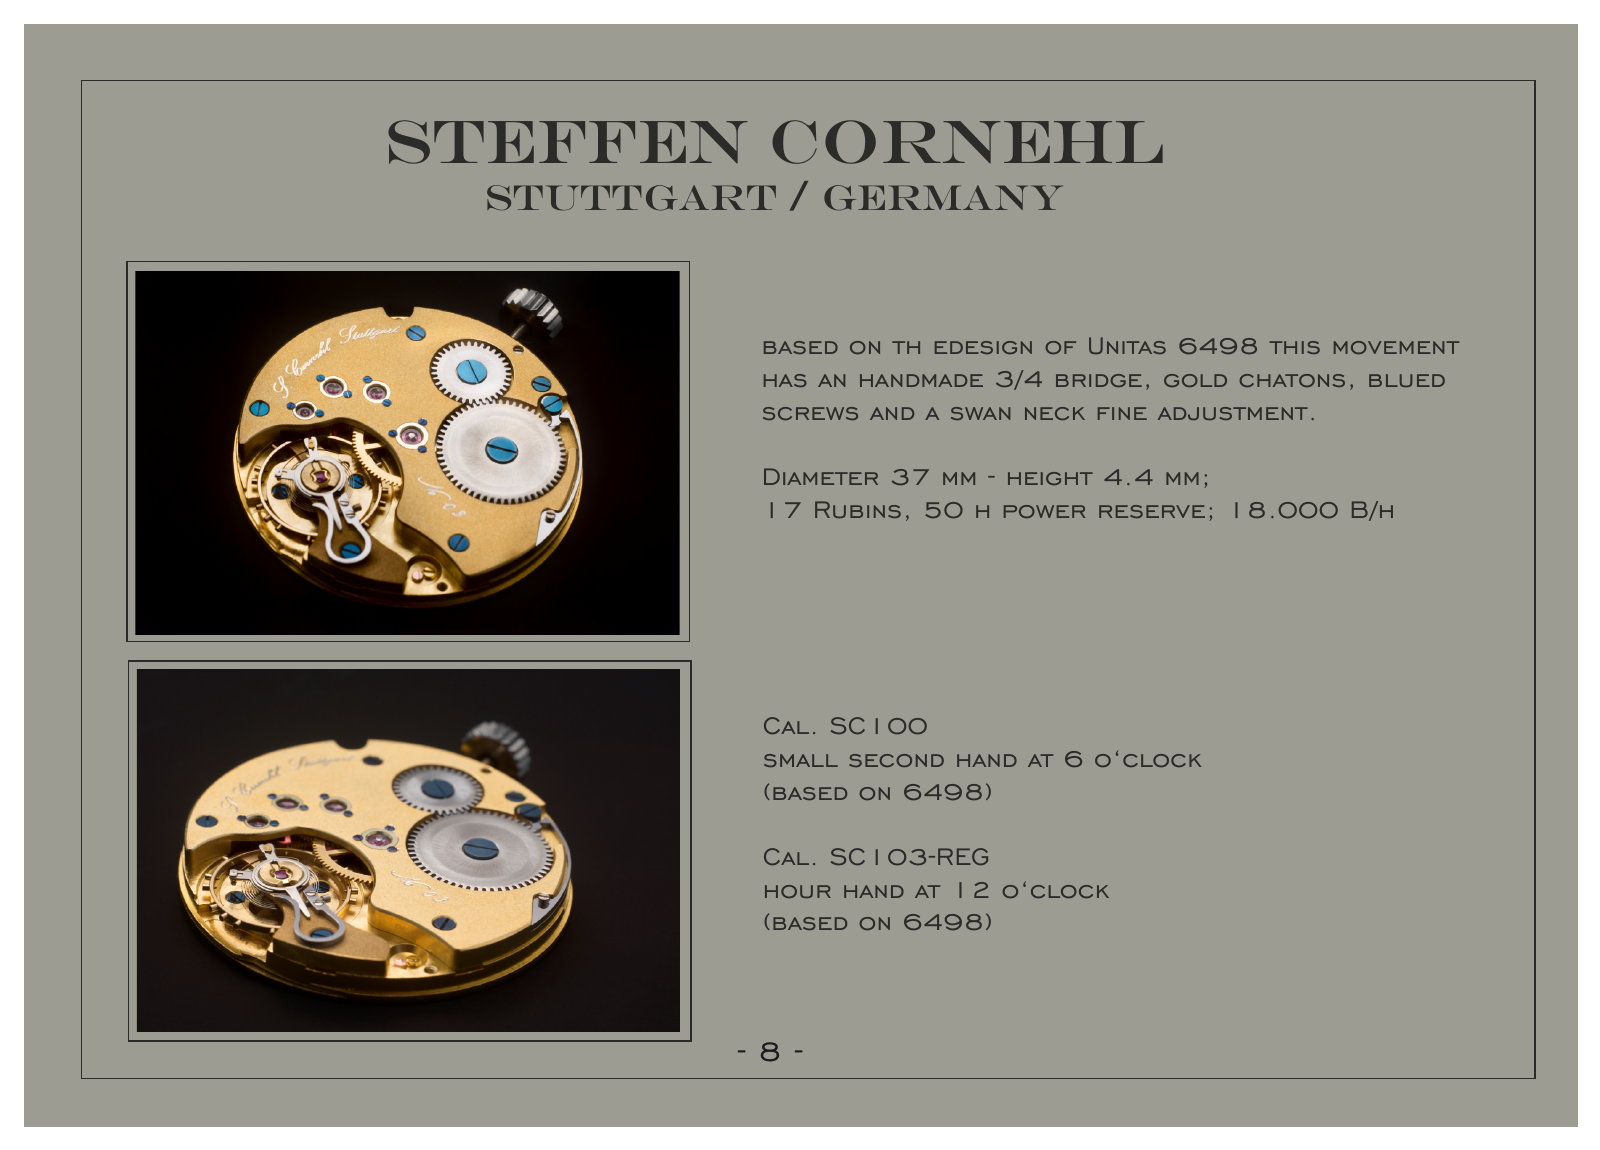 Vorschau Cornehl Watches Catalogue English Seite 9